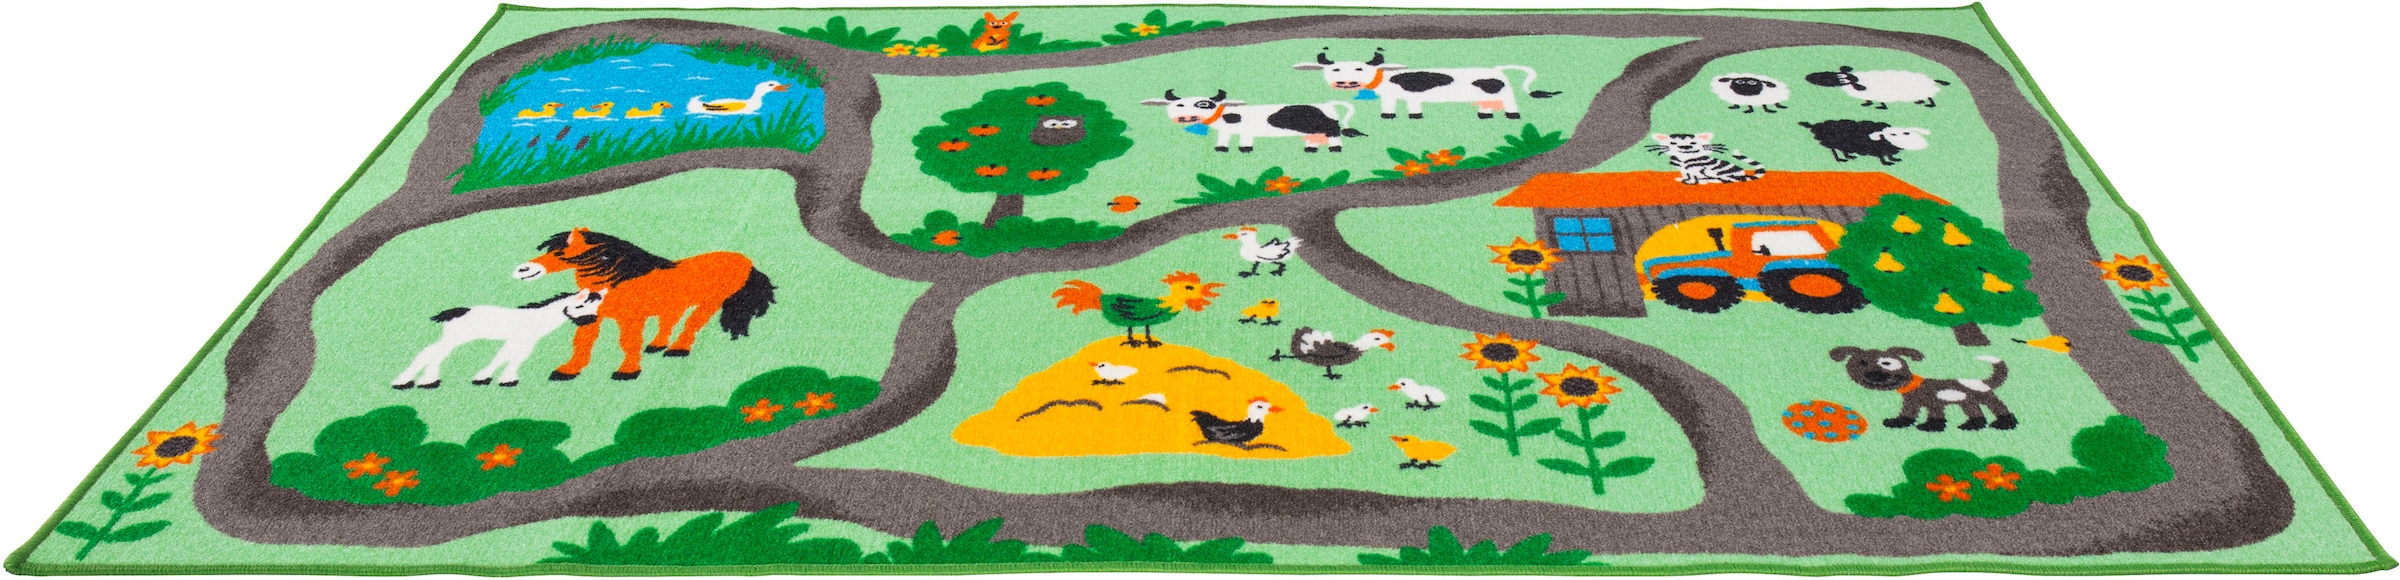 Andiamo Kinderteppich »Farmstead«, rechteckig, Spiel- und Straßenteppich, Motiv Bauernhof, Kinderzimmer